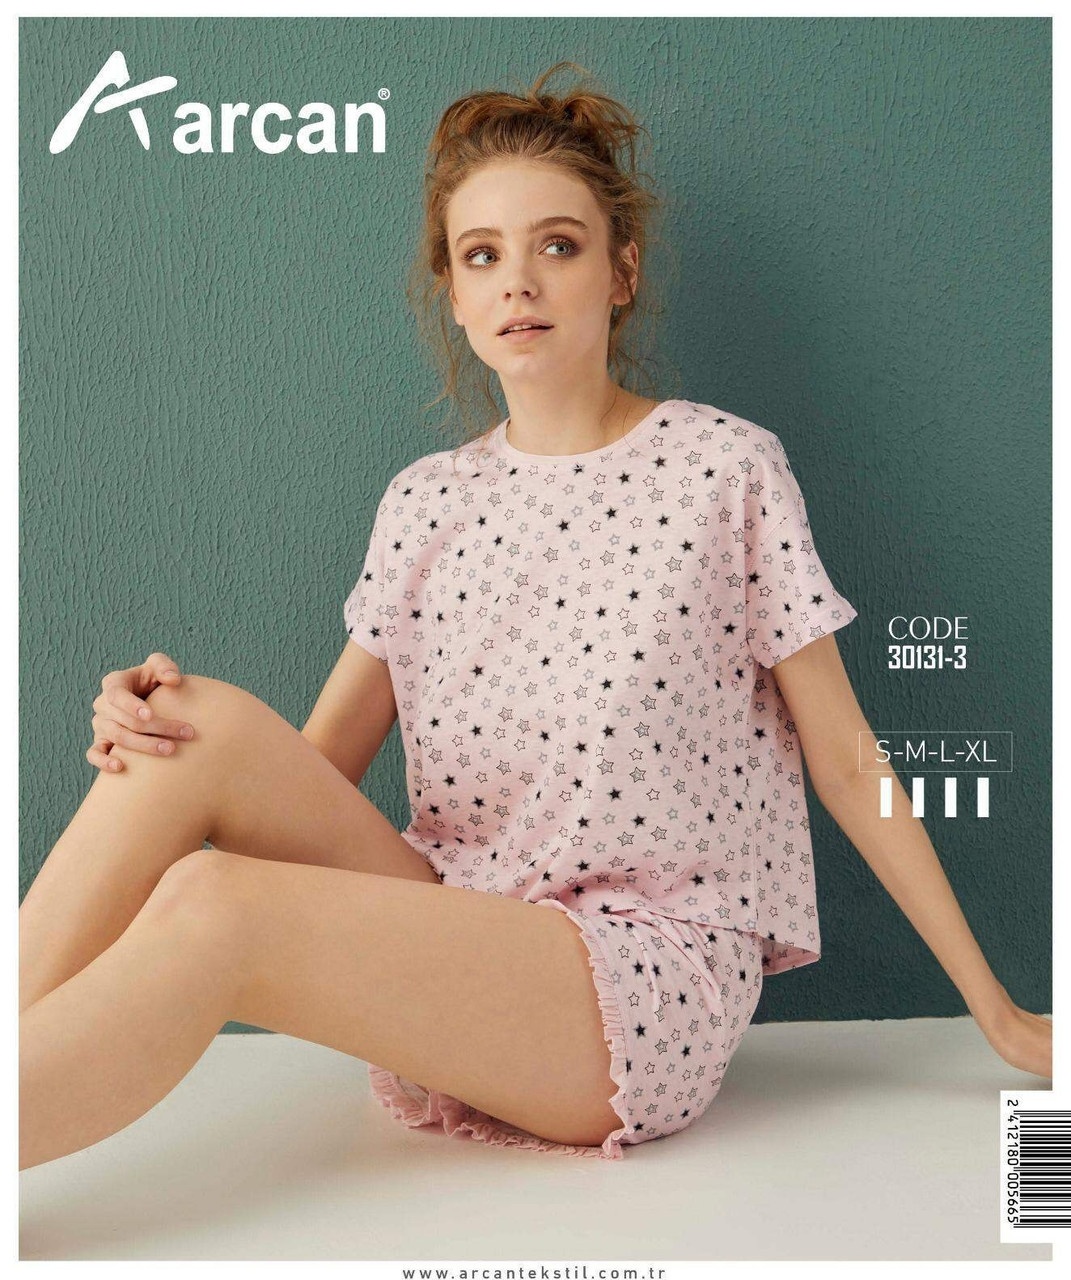 

Пижама женская с шортами Звезды производство Турция Аrcan S M L XL розовая